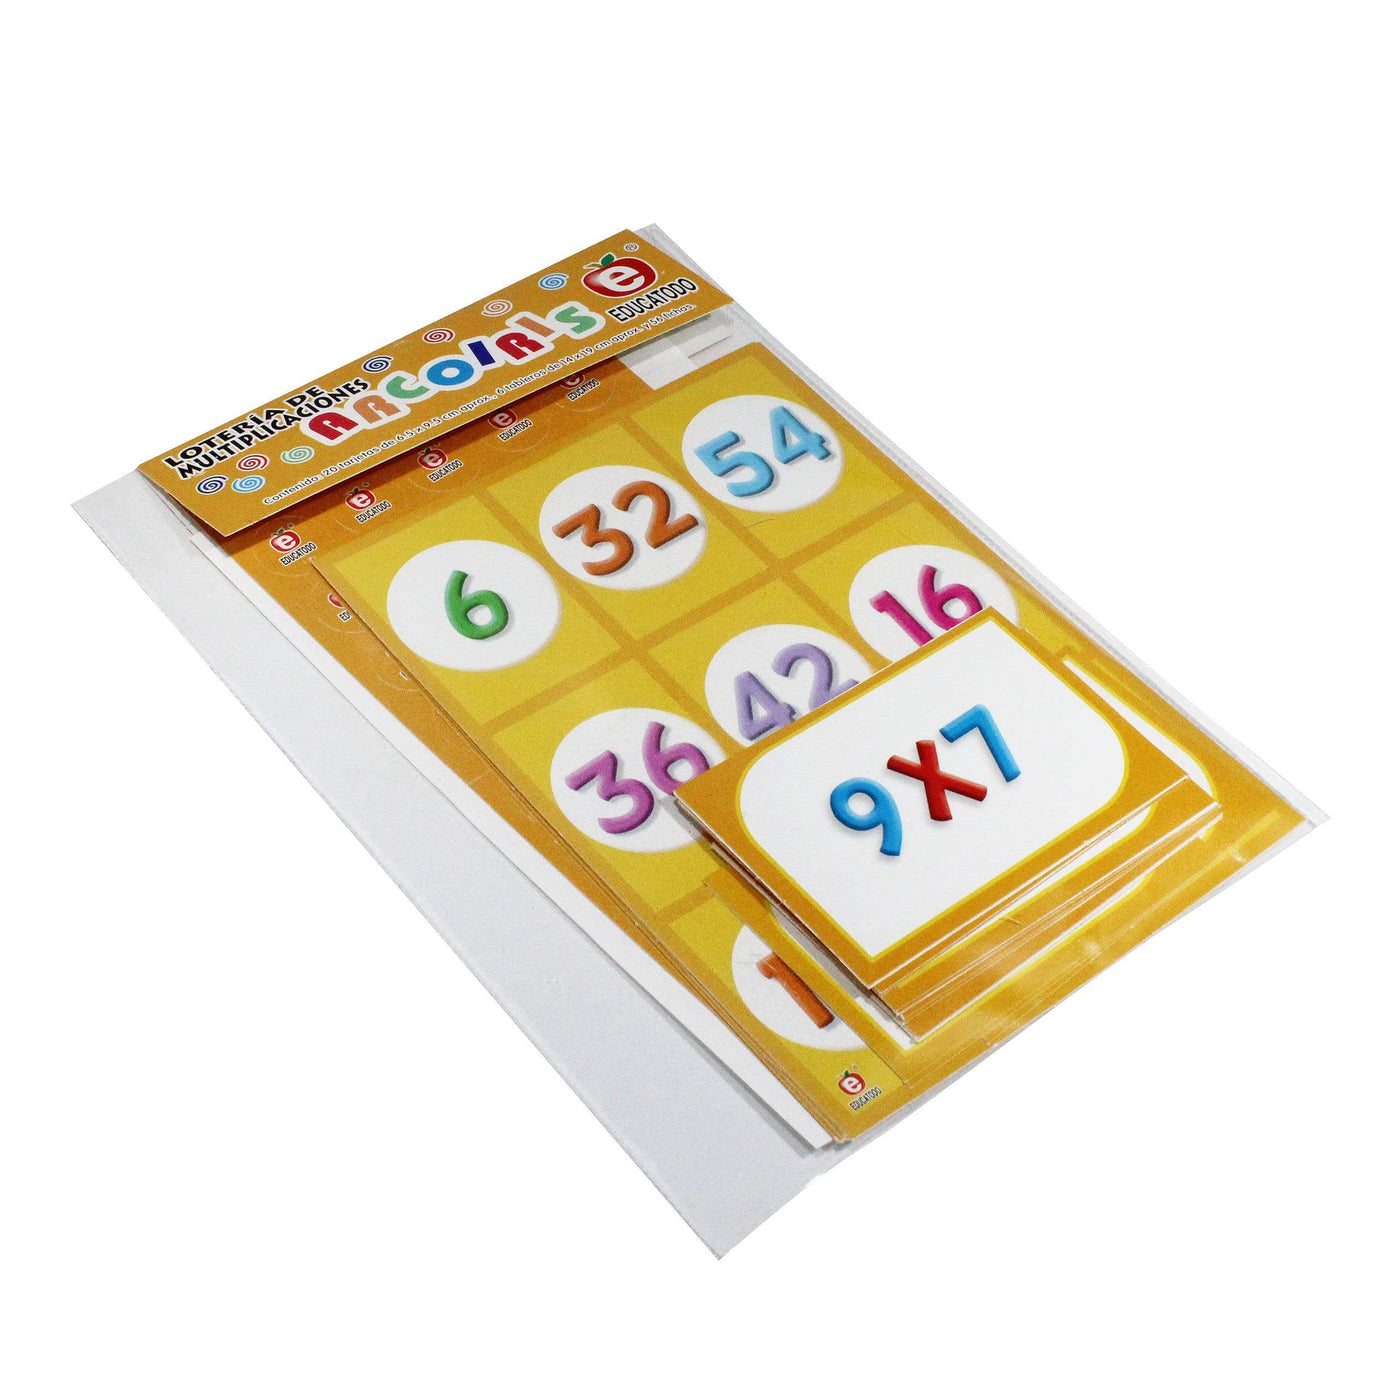 Didacti Lotería arcoíris multiplicación 6 tableros de 19x14 cm c/ 20 tarjetas 	 	